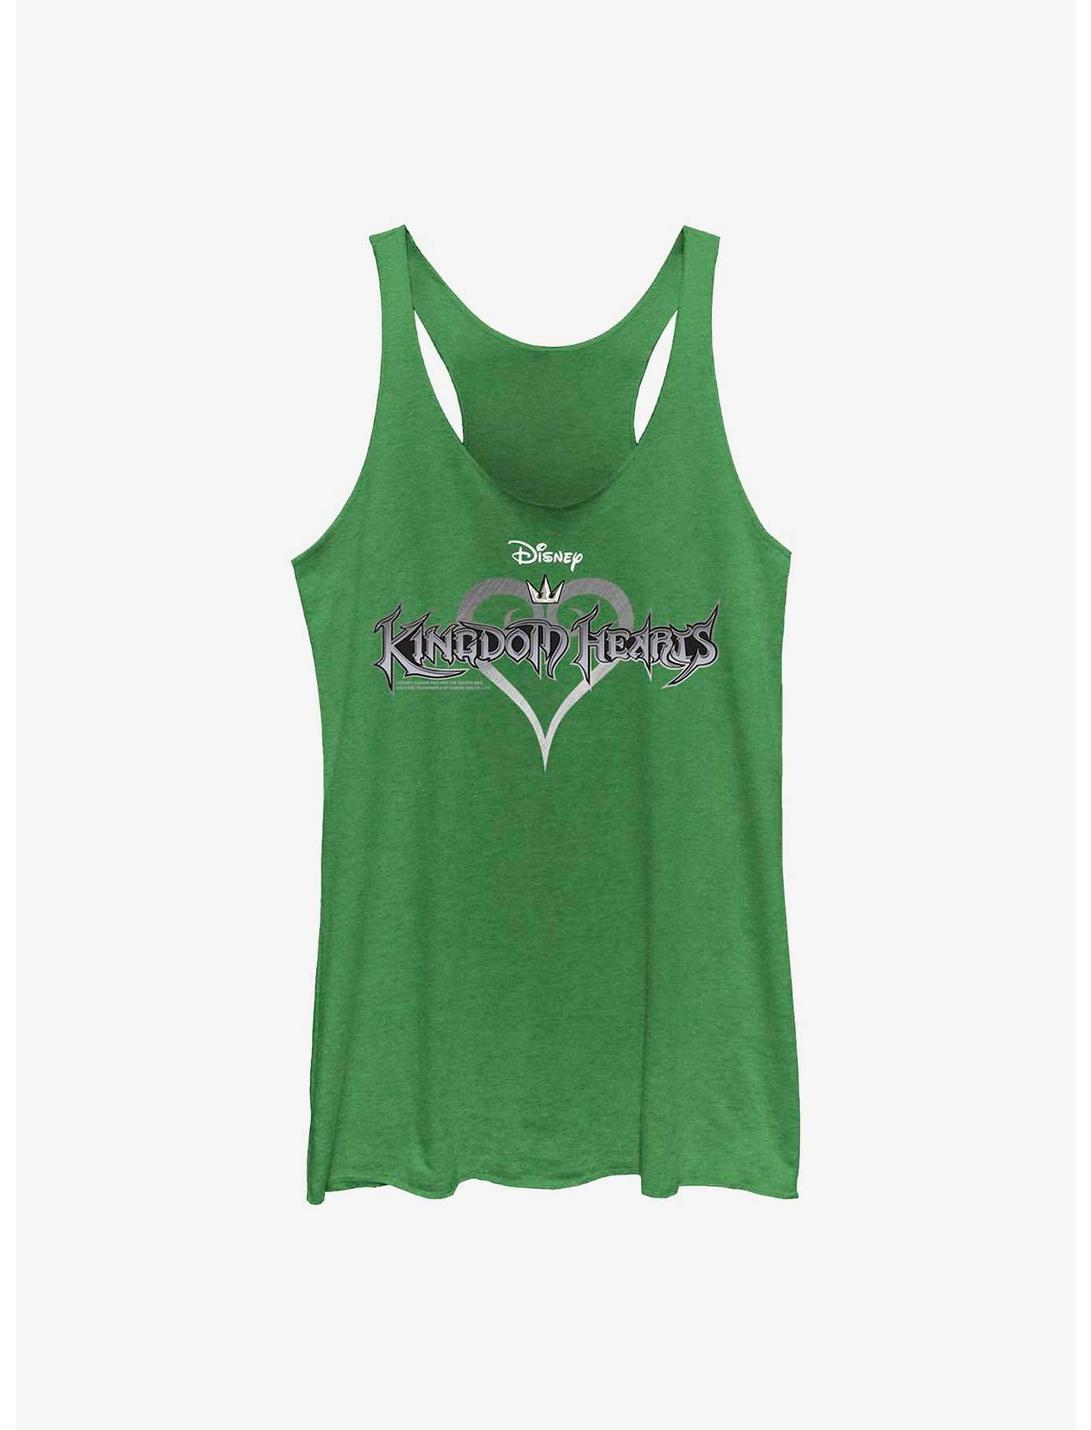 Disney Kingdom Hearts Logo Womens Tank Top, ENVY, hi-res